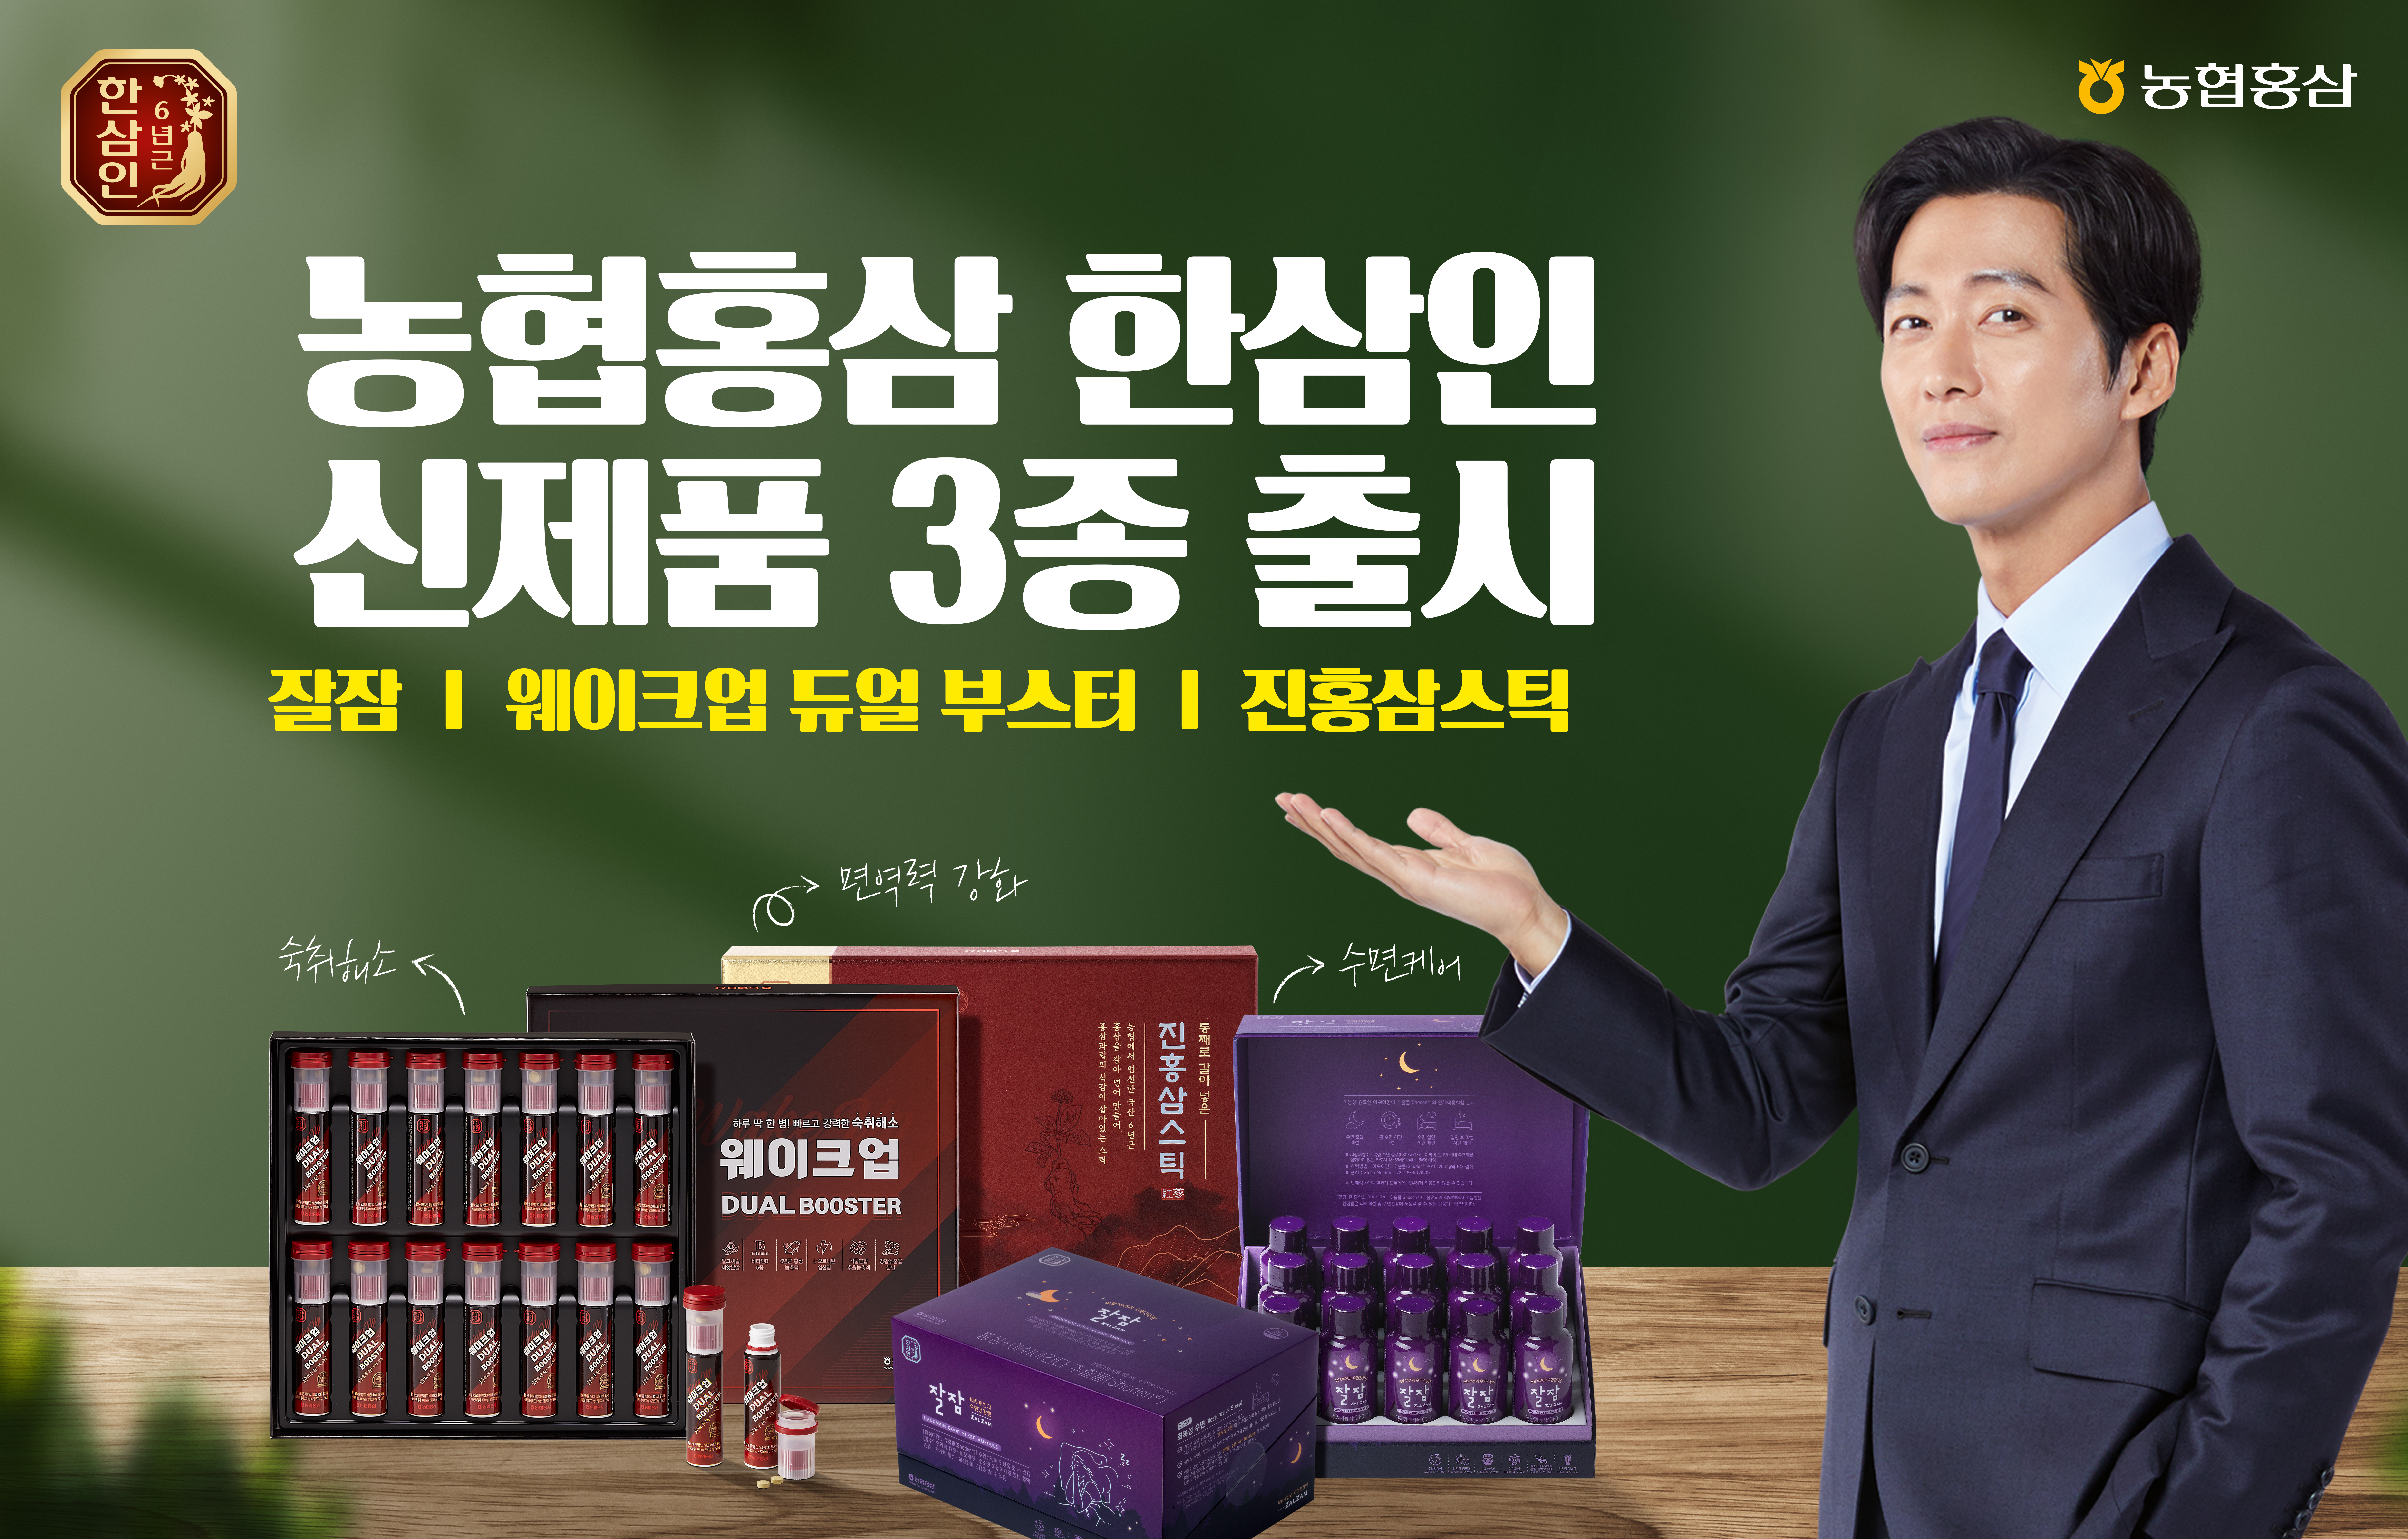 농협홍삼,식품R&D통합오피스와 공동연구 한 신제품 3종 출시